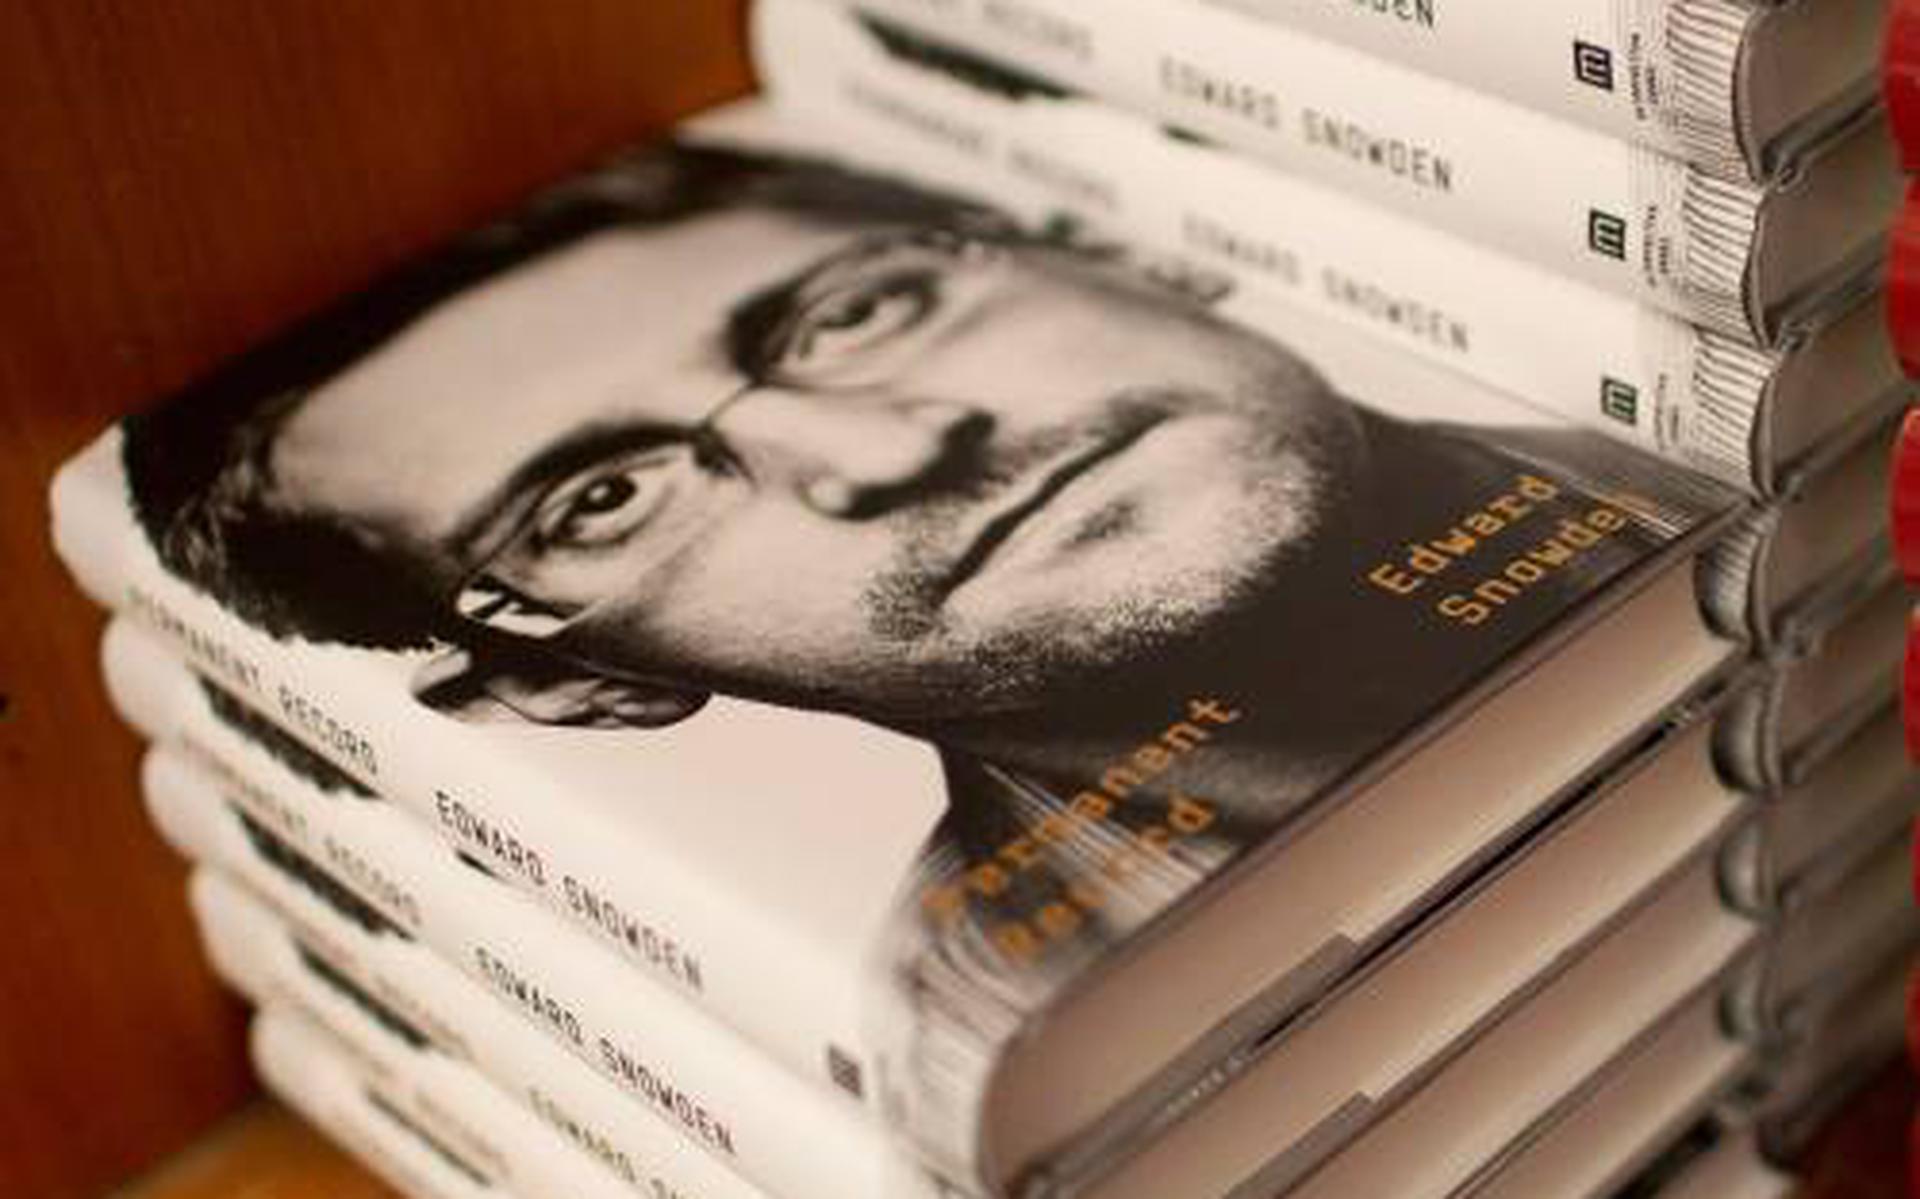 VS klagen klokkenluider Snowden aan om boek